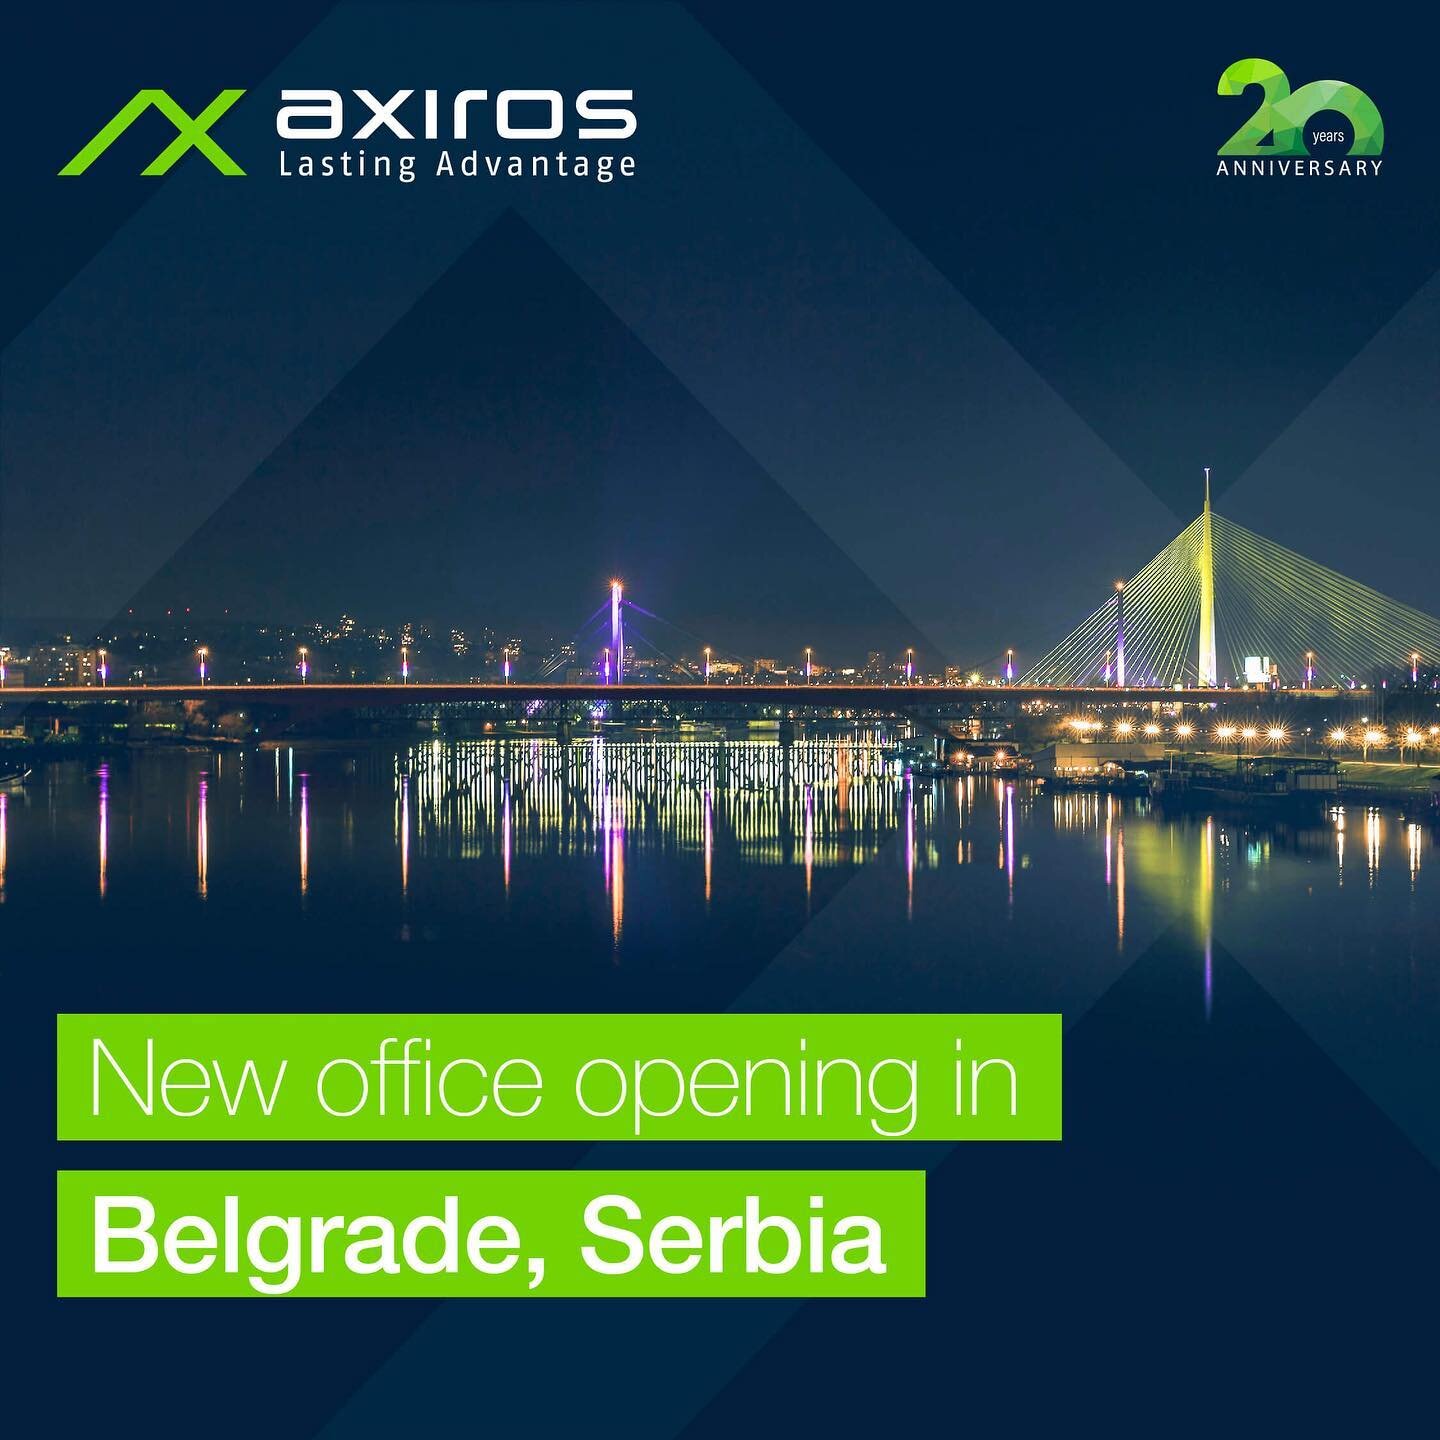 [Axiros News] ¡ Axiros vuelve a crecer! 🌍🚀

Axiros ha abierto una nueva oficina en Belgrado, la capital de Serbia, en el marco de su expansión mundial. ➡️ Puede leer el anuncio completo: enlace en la biografía.

Queremos dar las gracias a todos